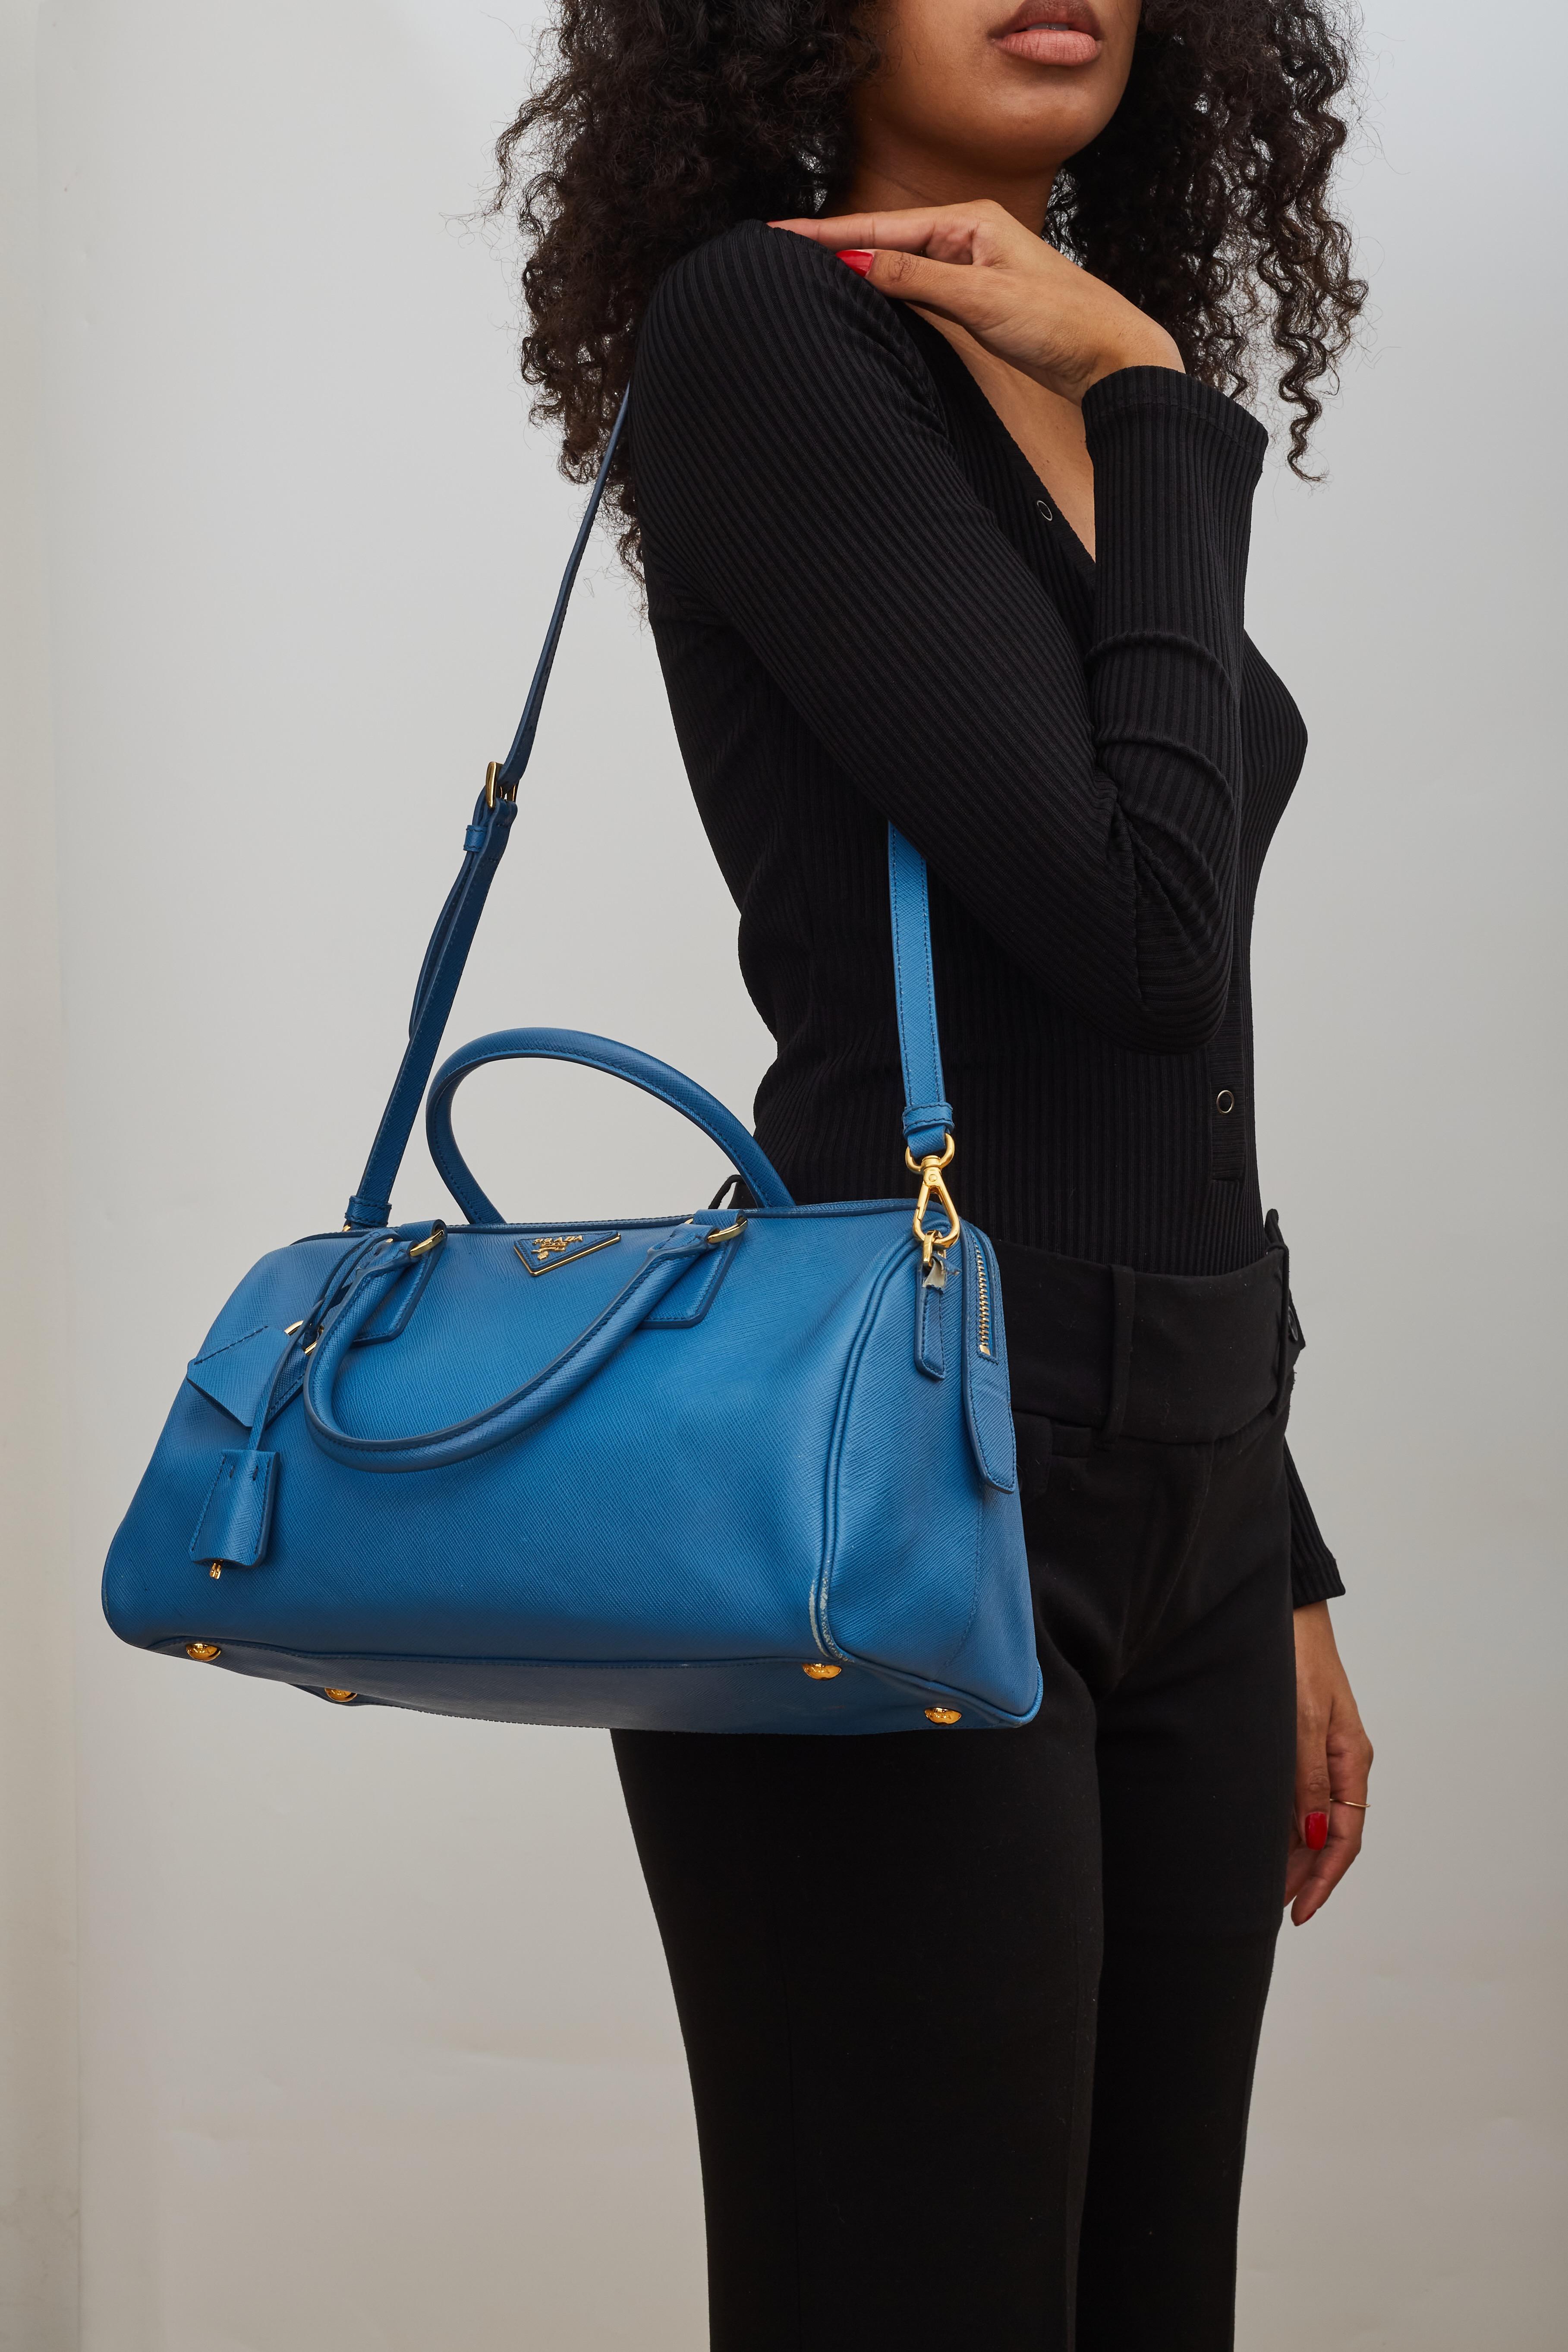 Prada Saffiano Leather Blue Bauletto Boston Bag Round For Sale 8